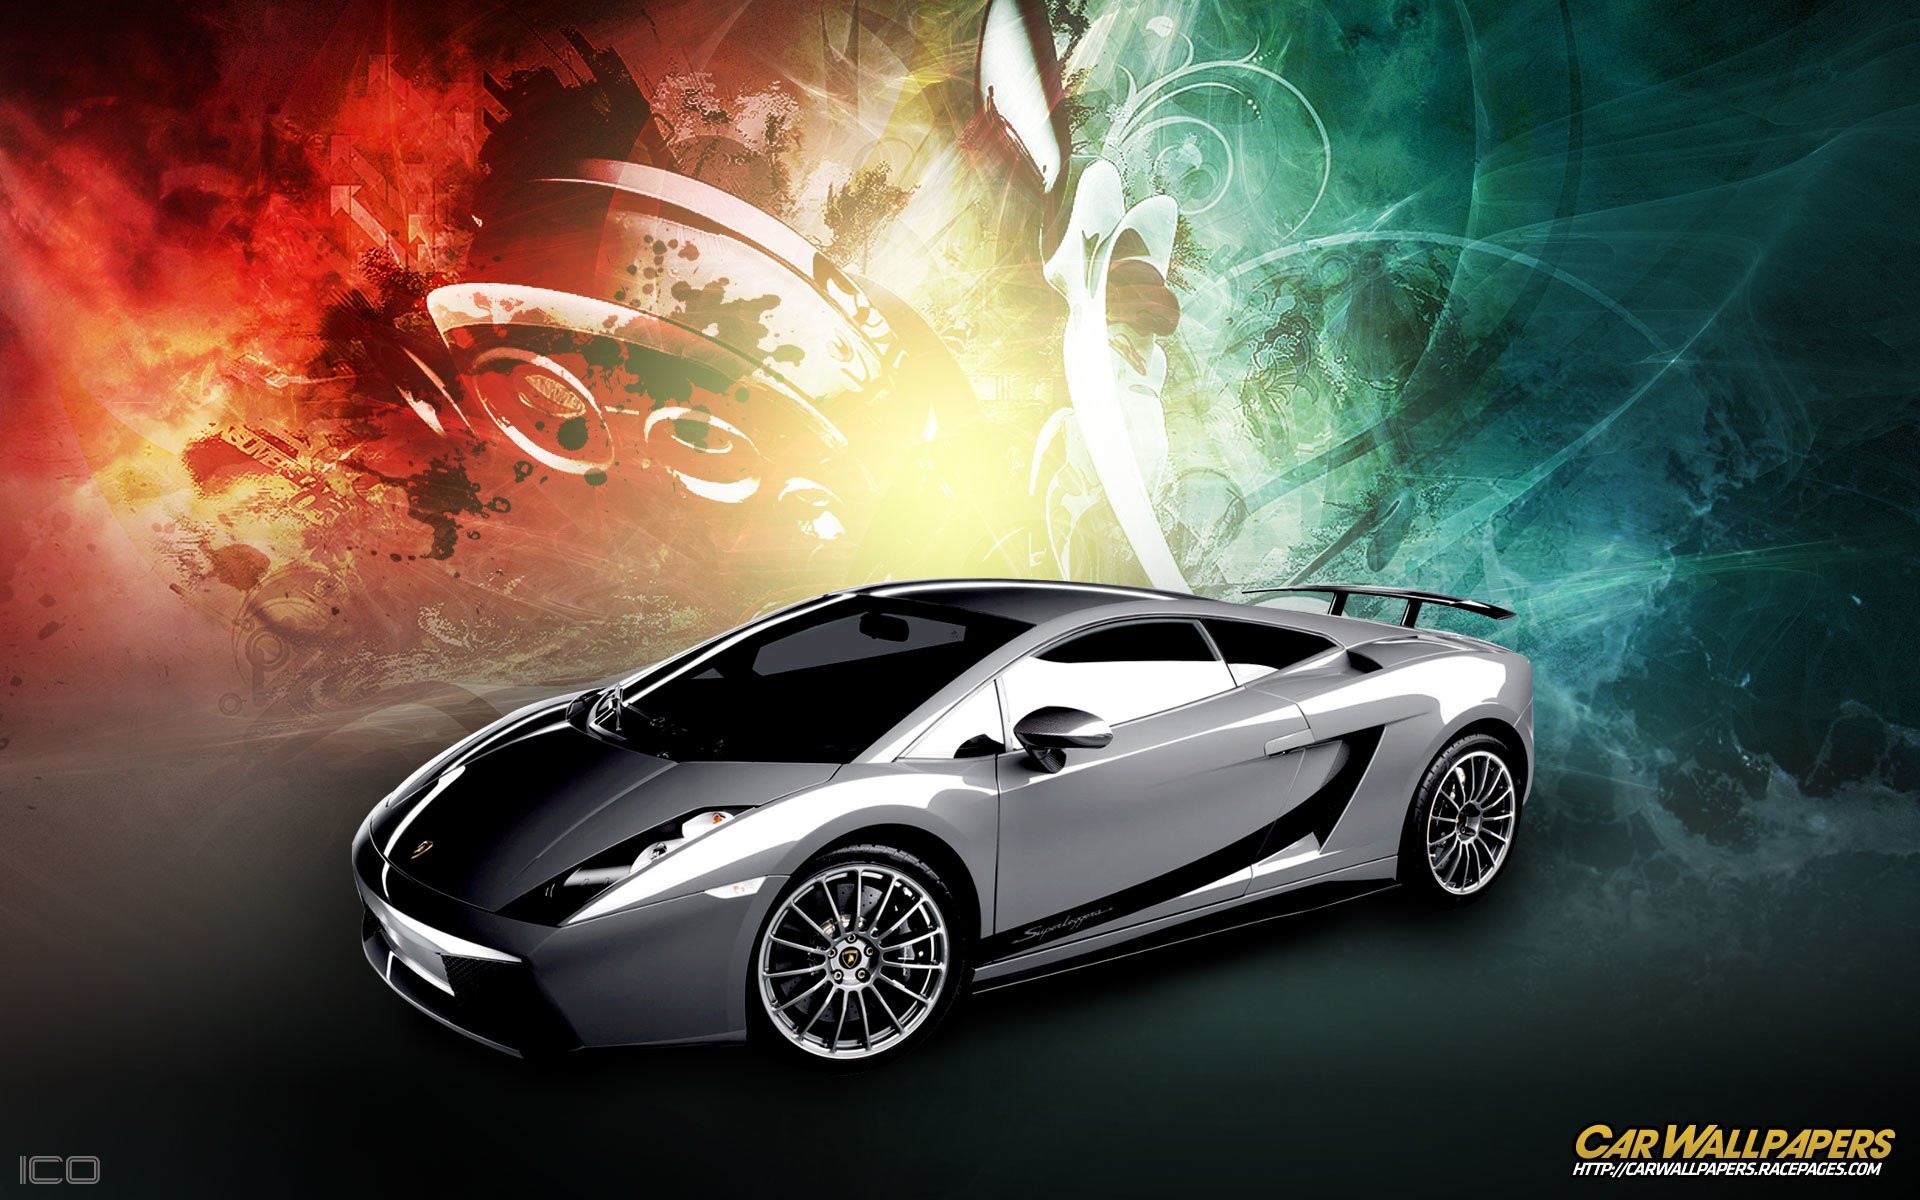 Hình nền siêu xe Lamborghini đẹp full HD cho máy tính - Hà Nội ...